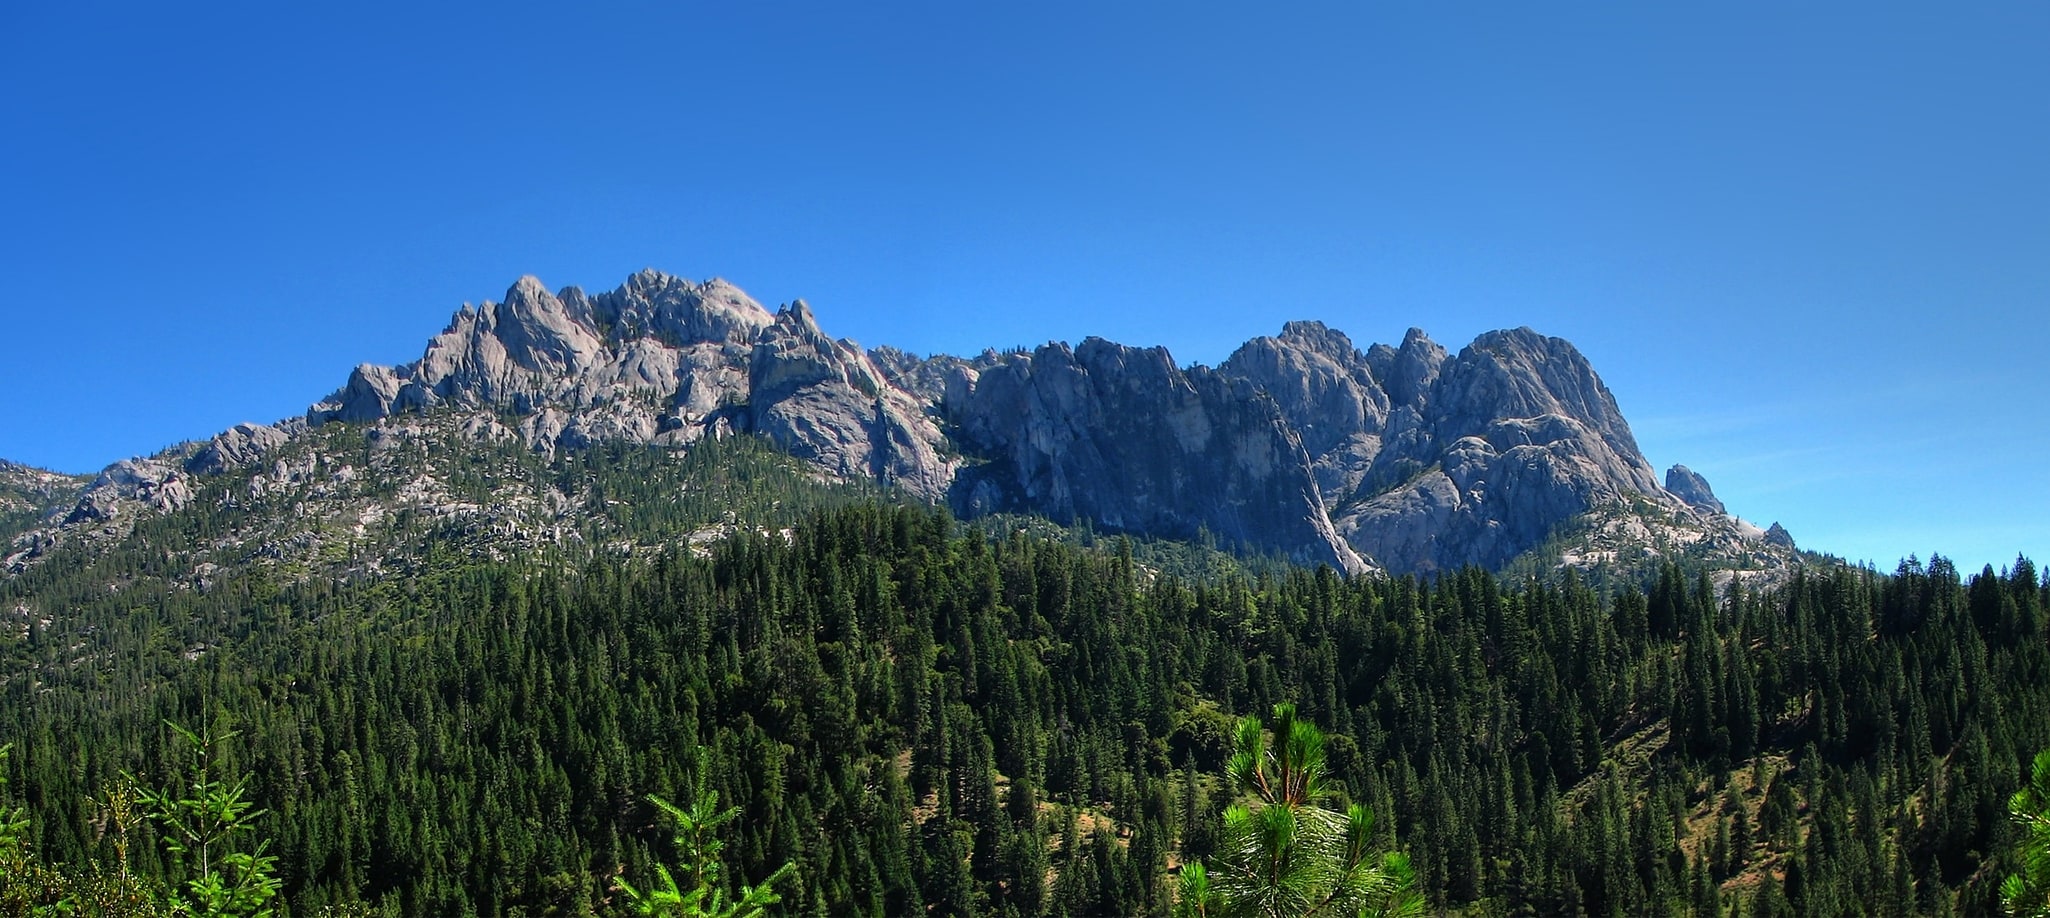 Castle Crags Wilderness, États-Unis